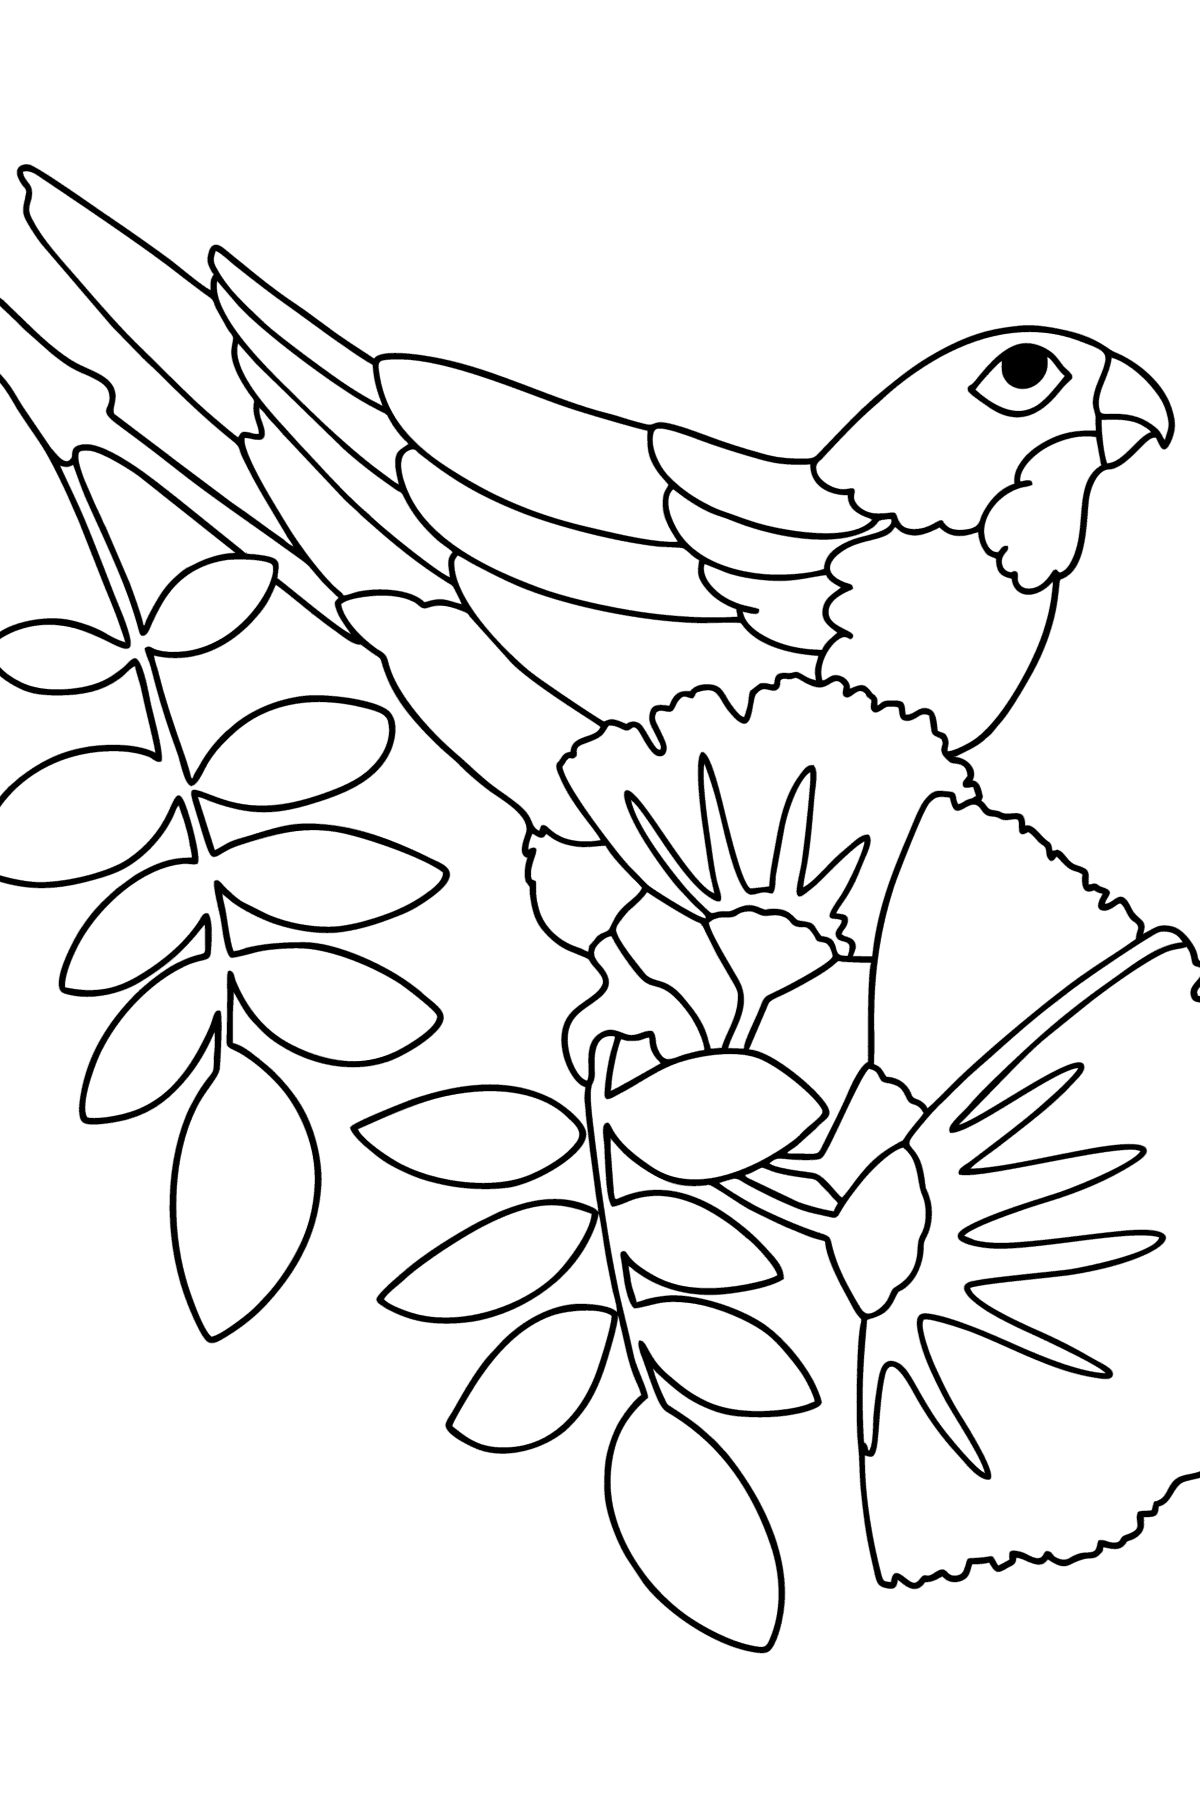 Boyama sayfası Papağan Ormanı - Boyamalar çocuklar için